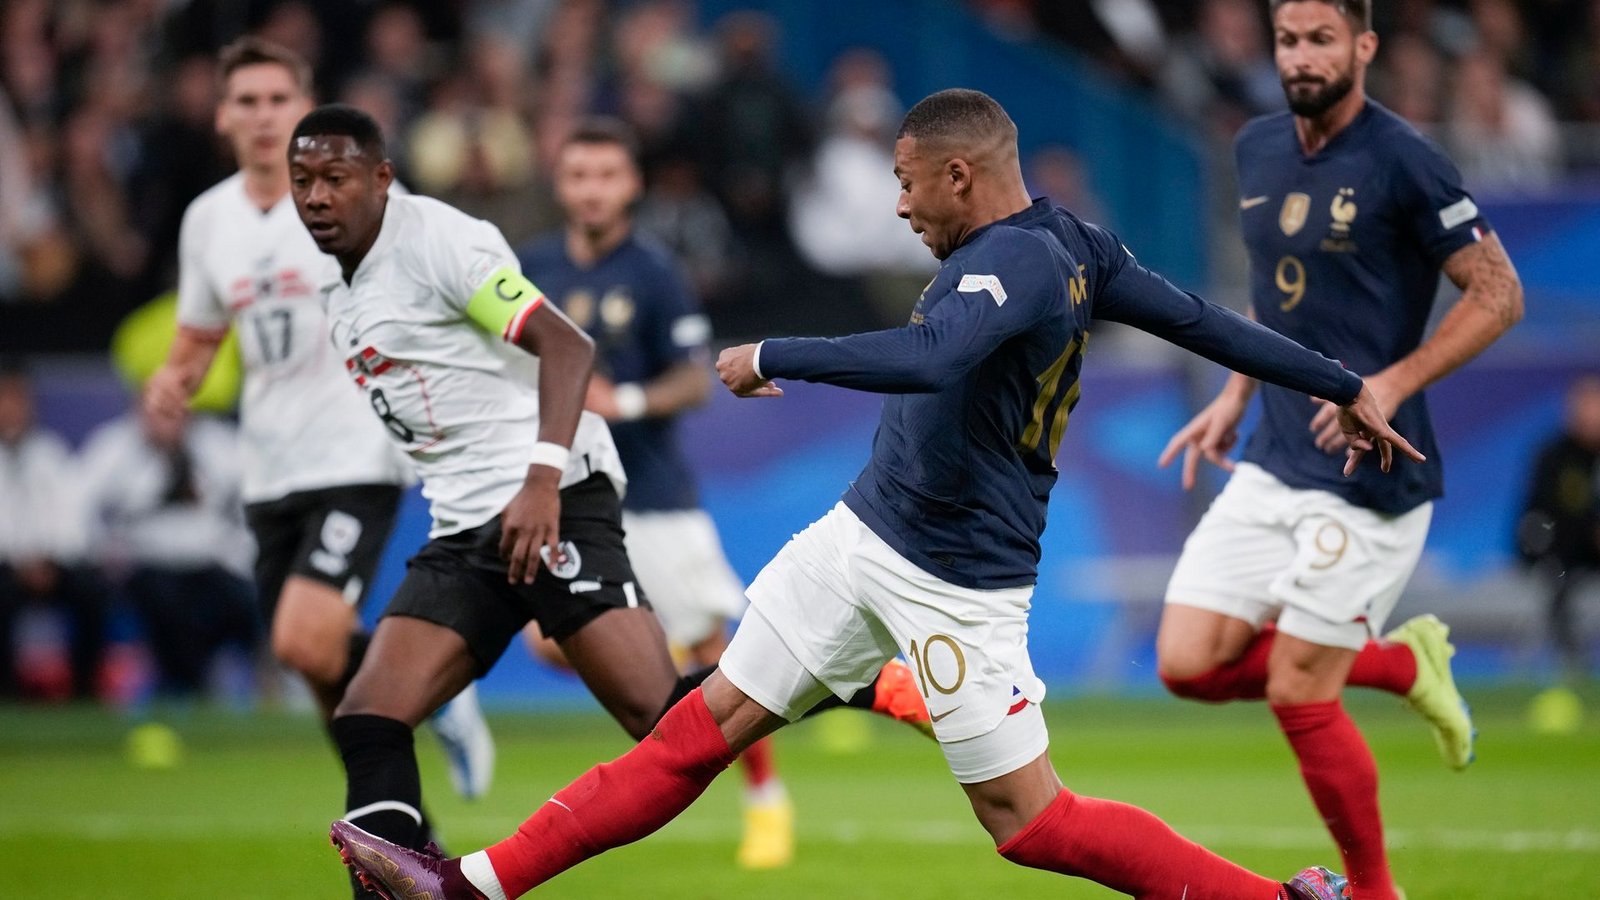 Die Franzosen um Kylian Mbappé (M.) setzten sich gegen Österreich durch.Foto: Christophe Ena/AP/dpa